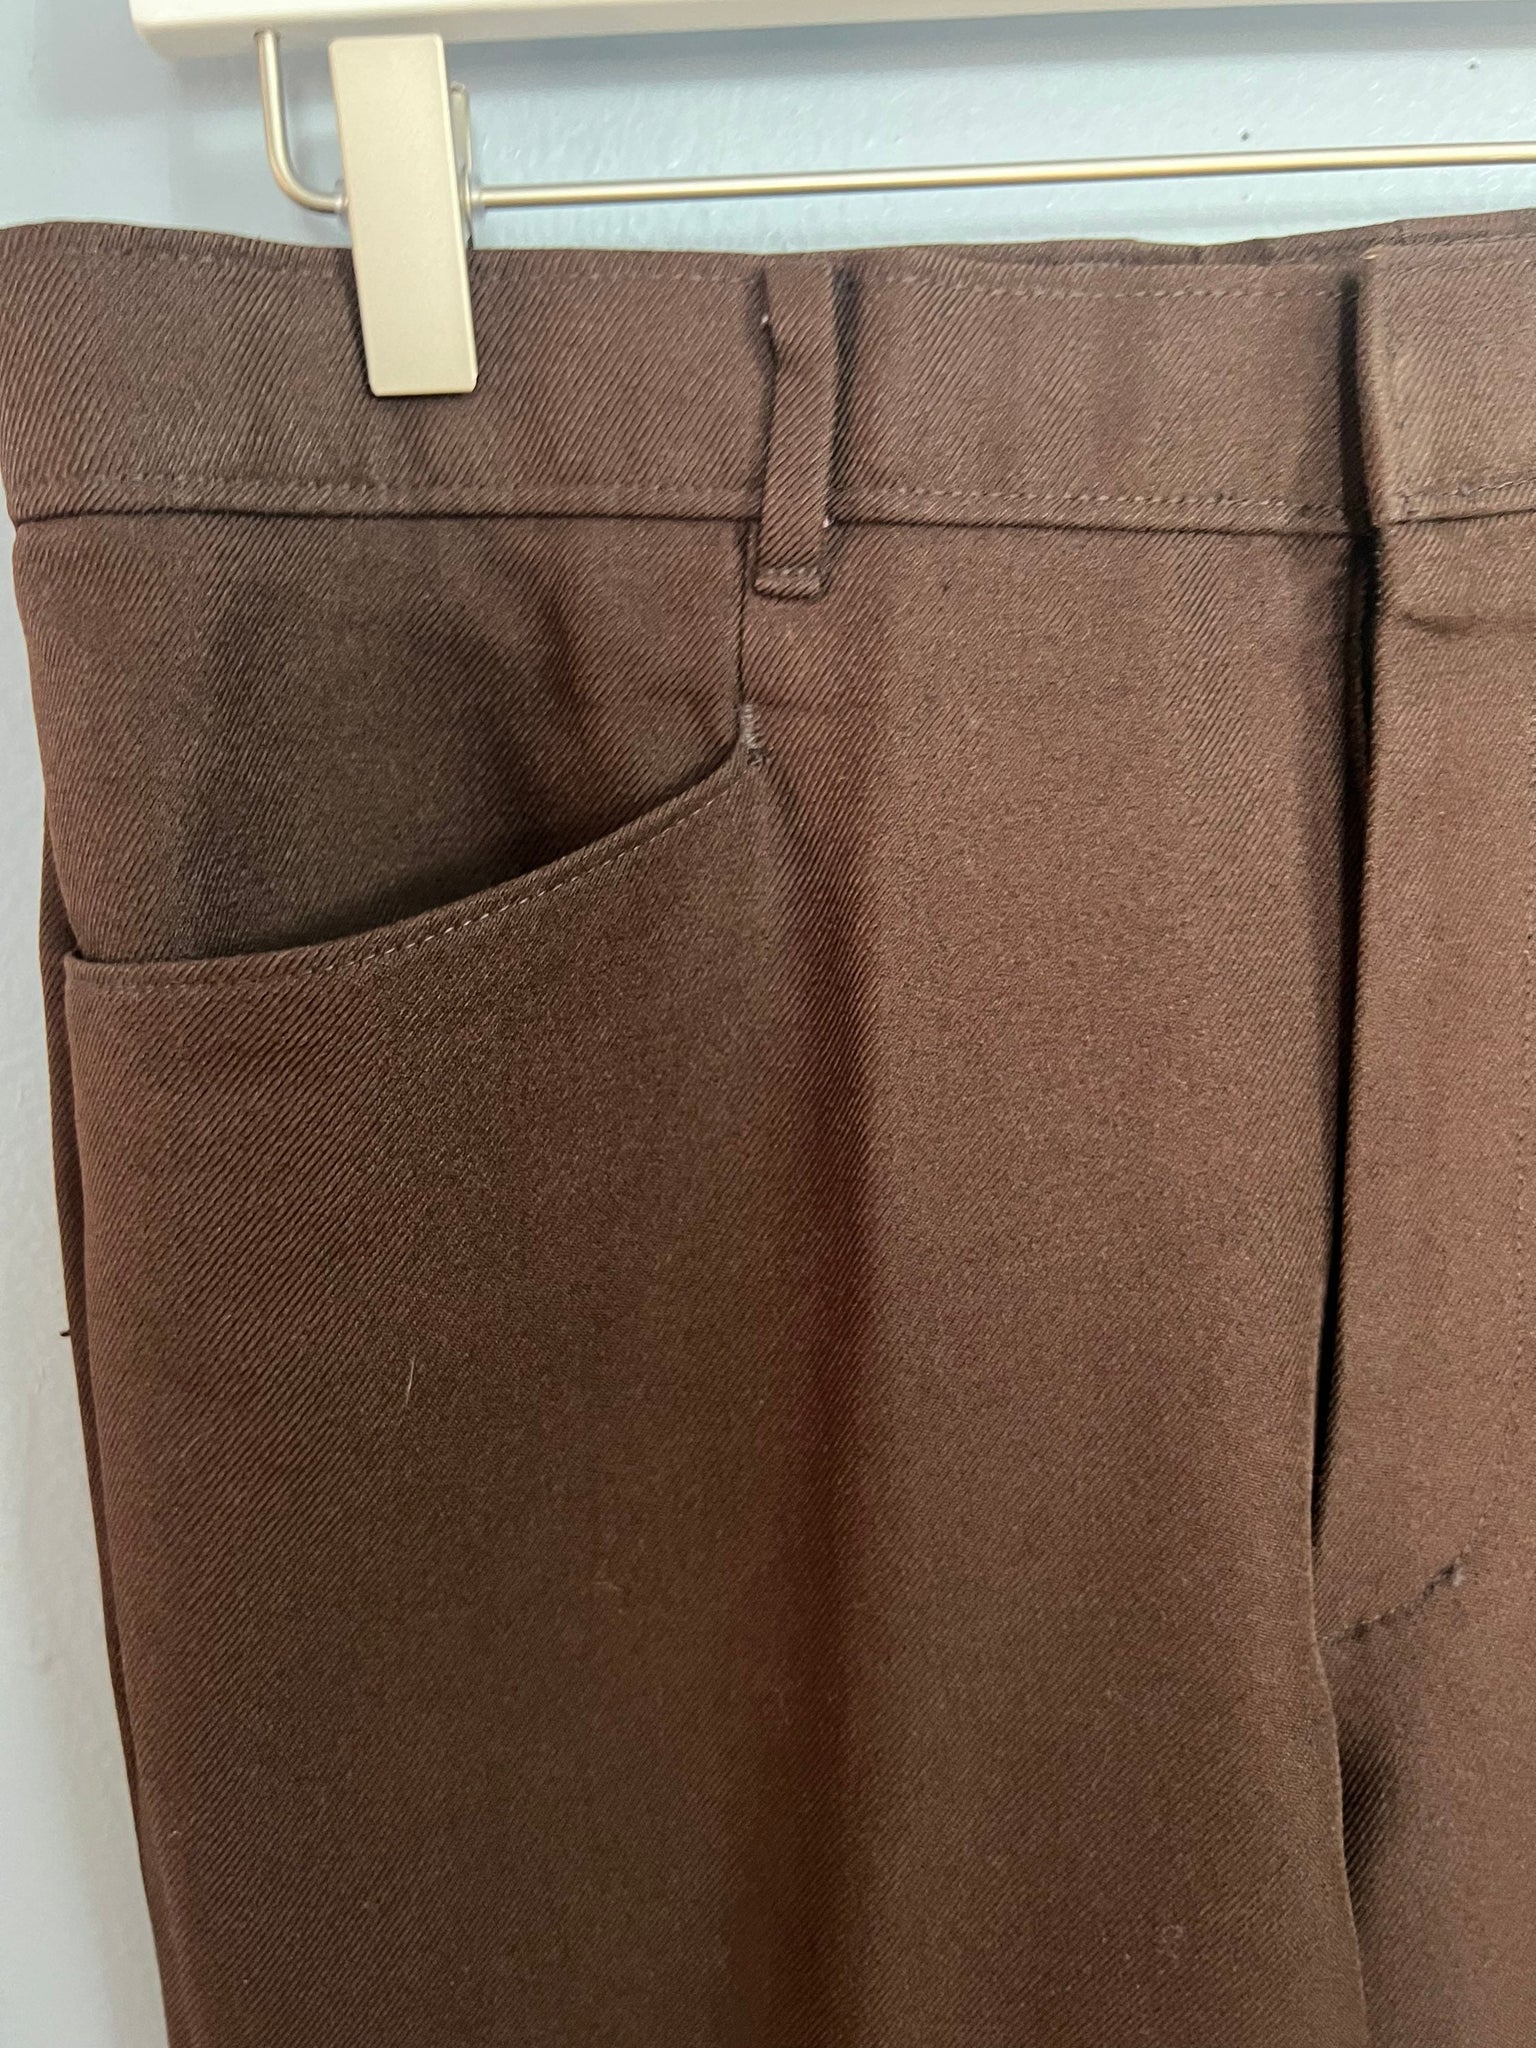 Vintage 70's Levis brown pants 34 x 32